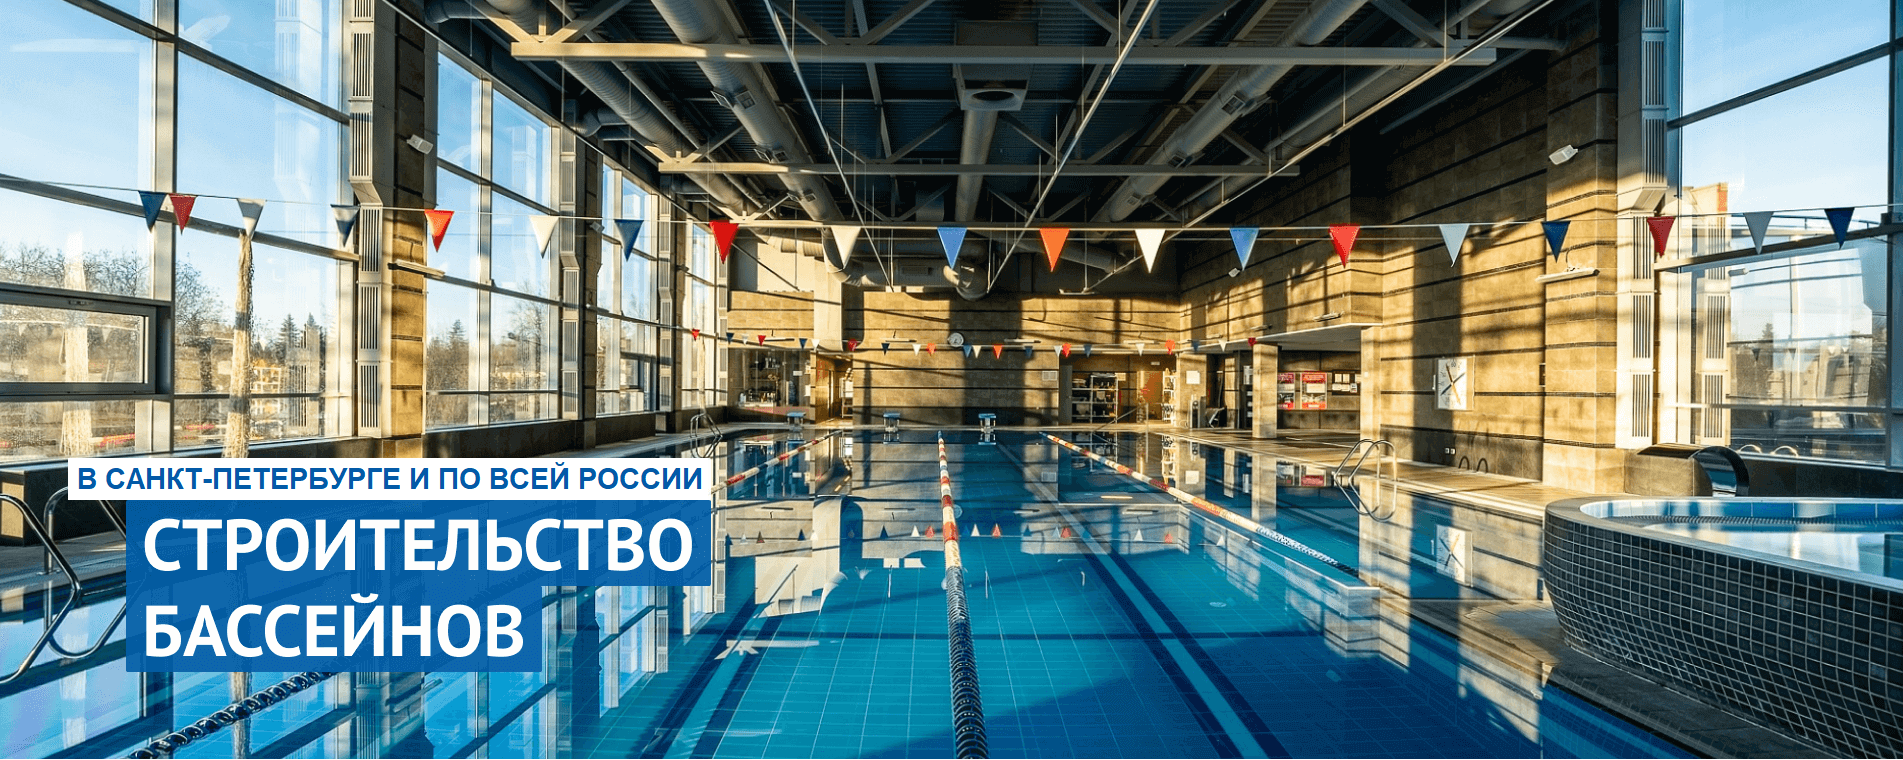 slide_two_5 Строительство бассейнов под ключ в СПб | ВанБас